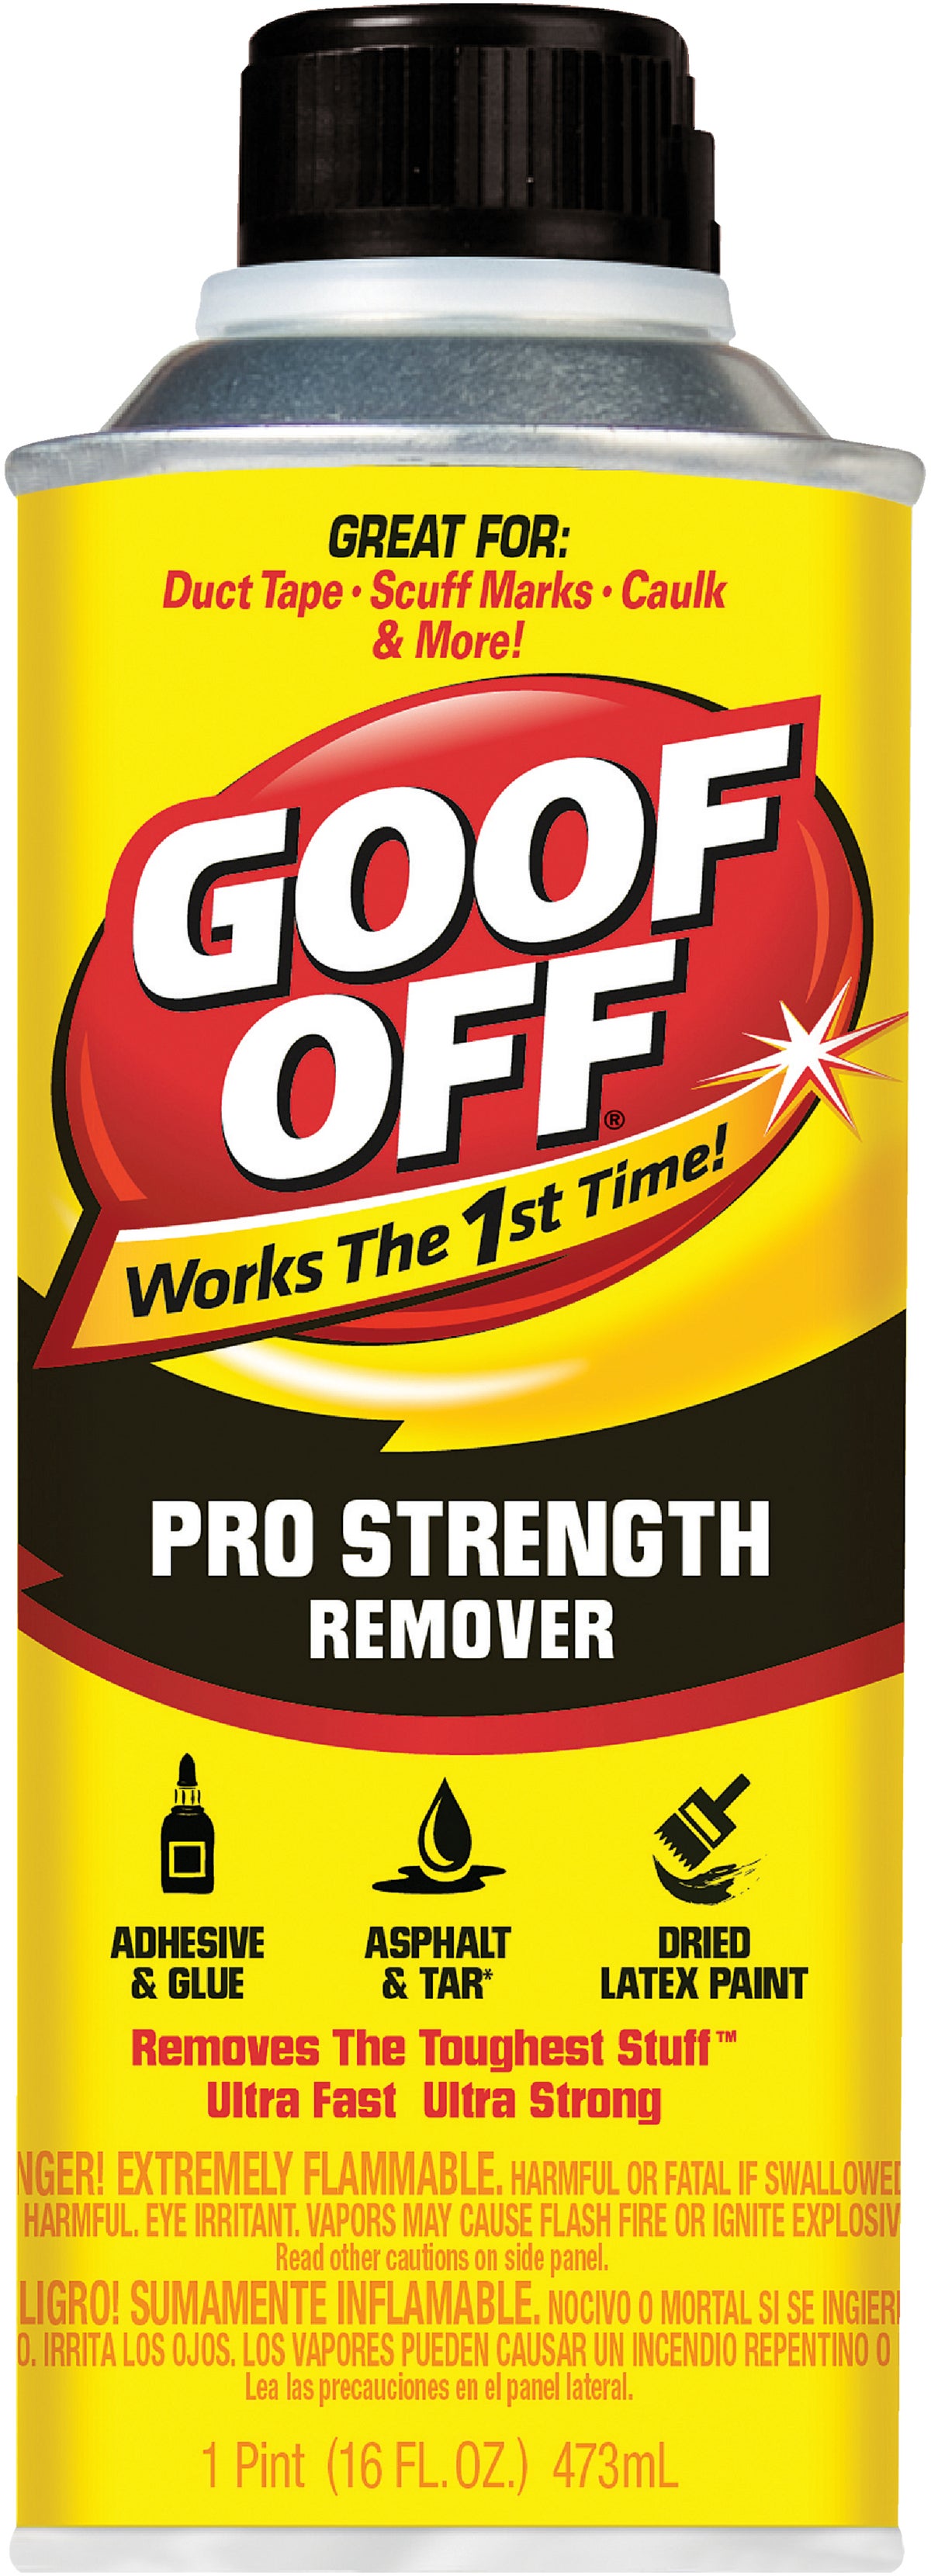 Goof Off FG678, Pro Strength Can, 4oz Super Glue Remover